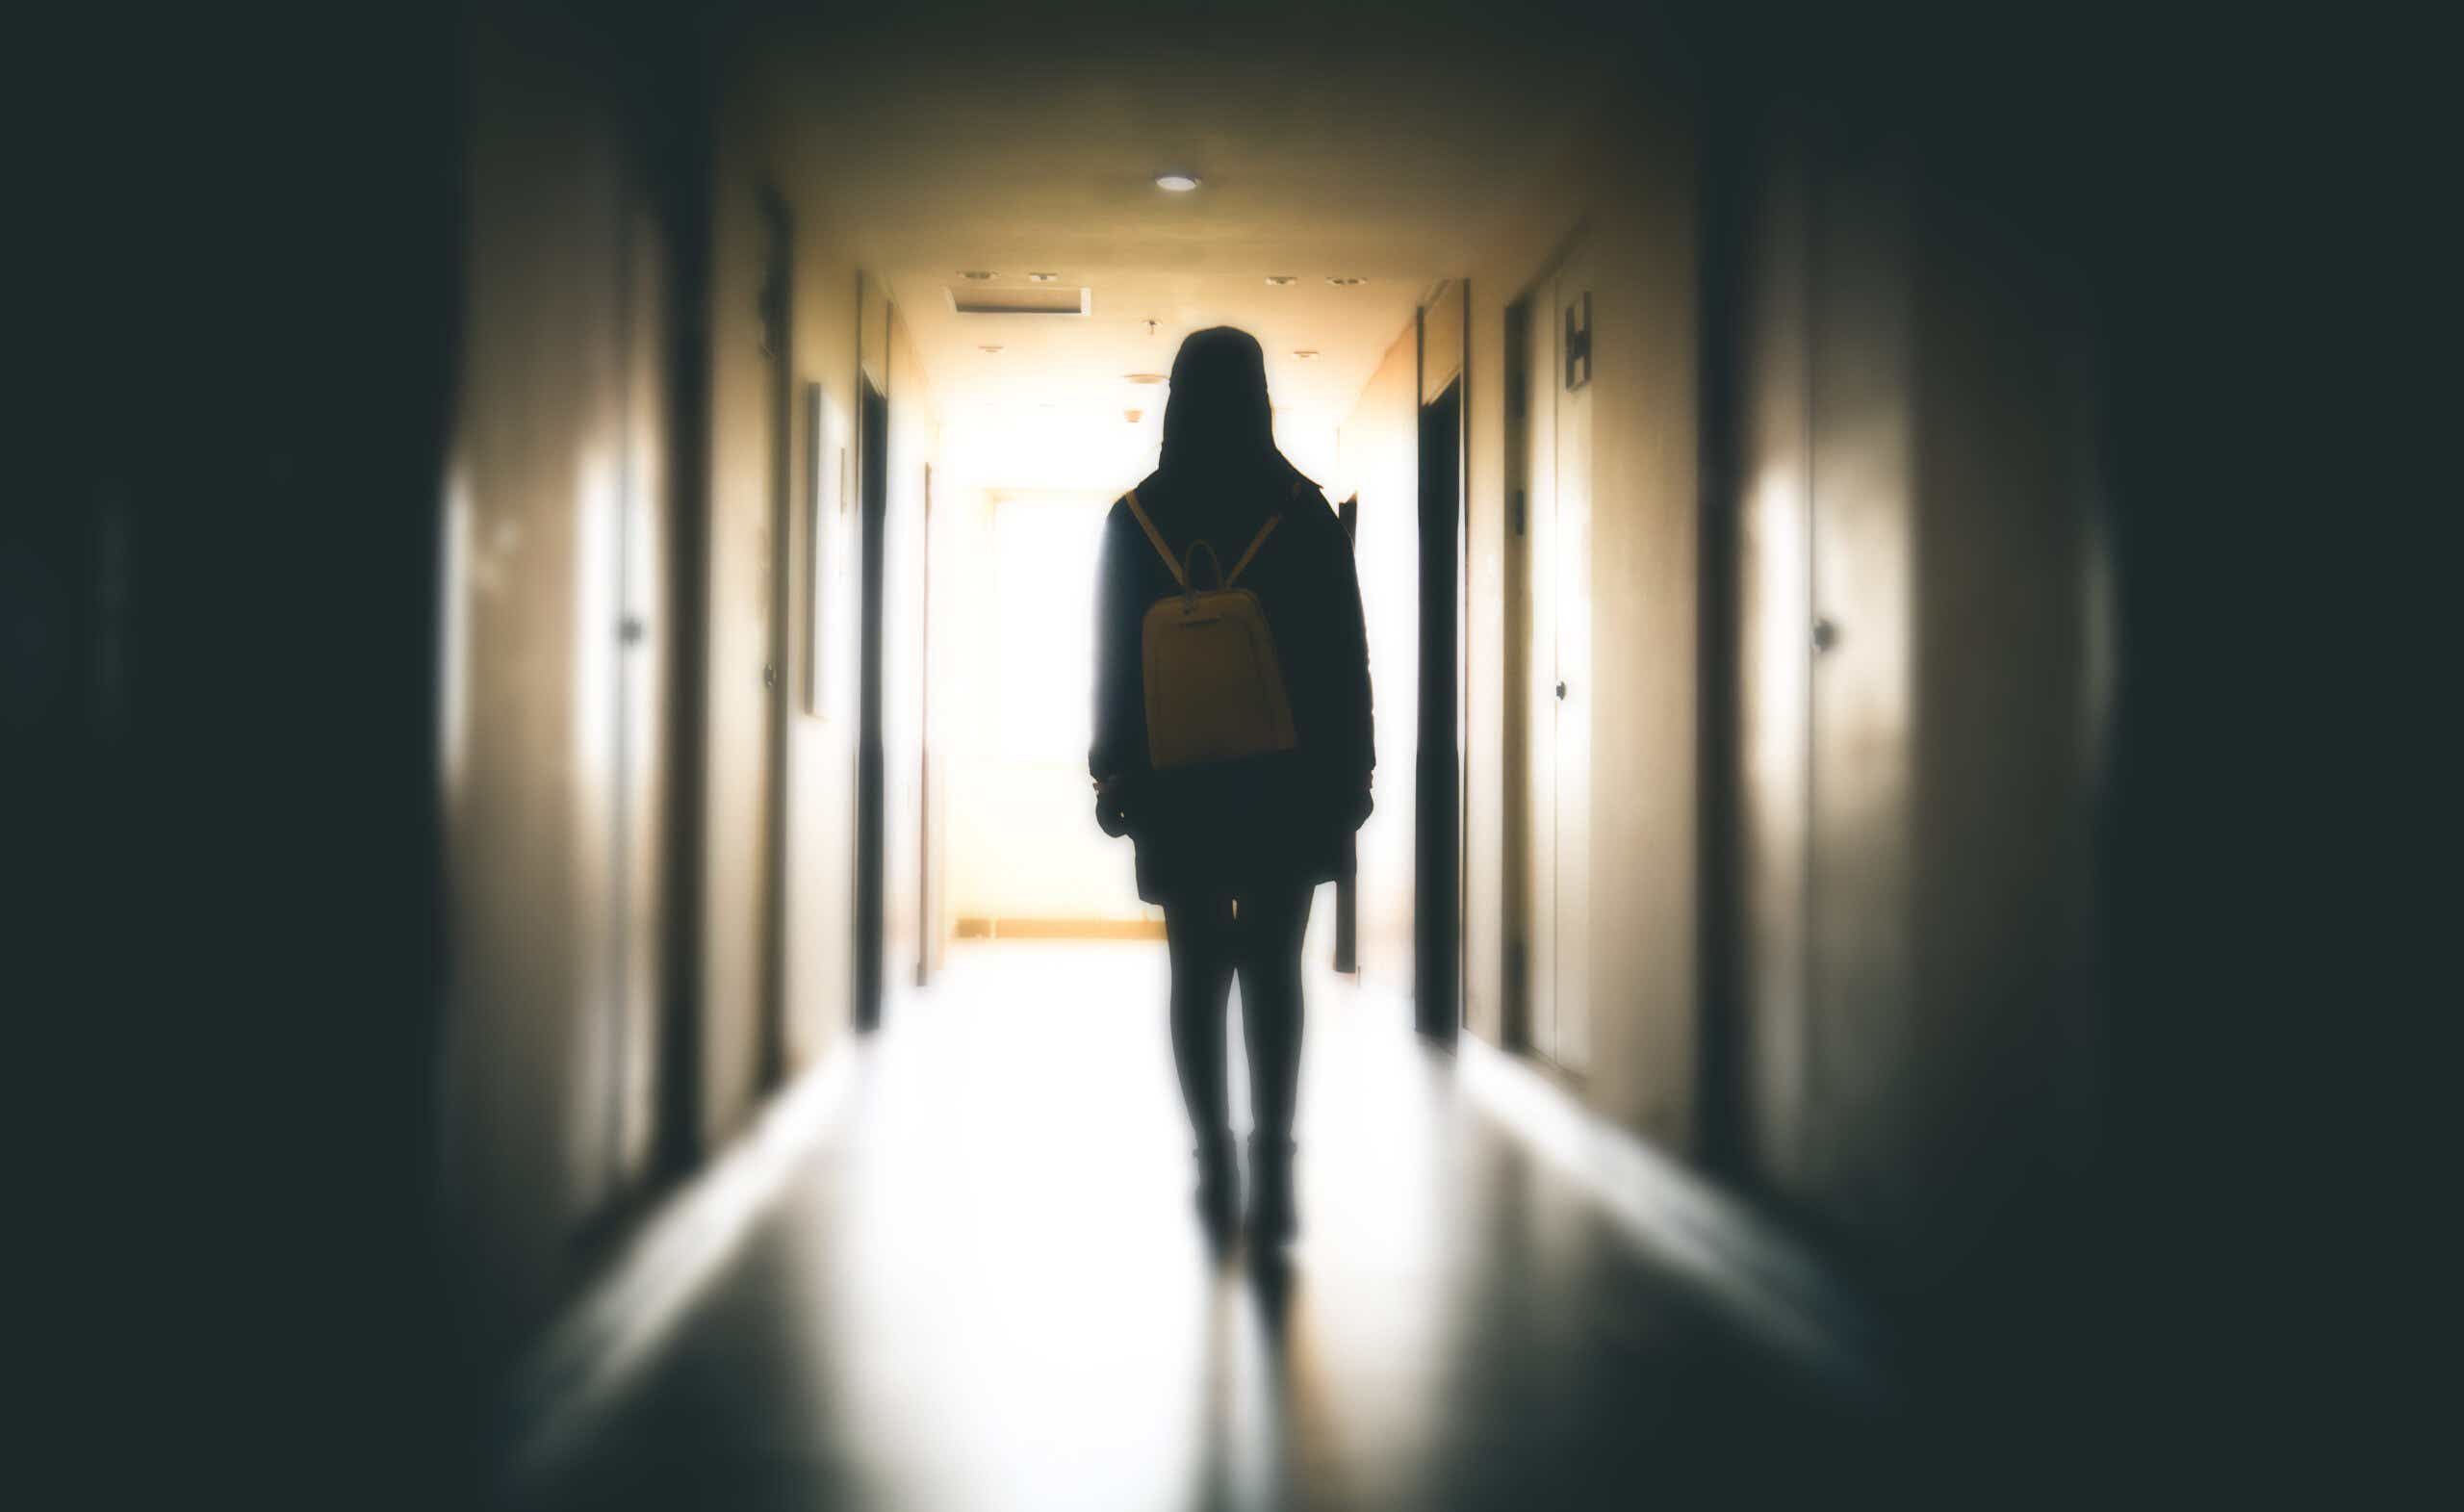 Teen girl in shadowy hallway from behind